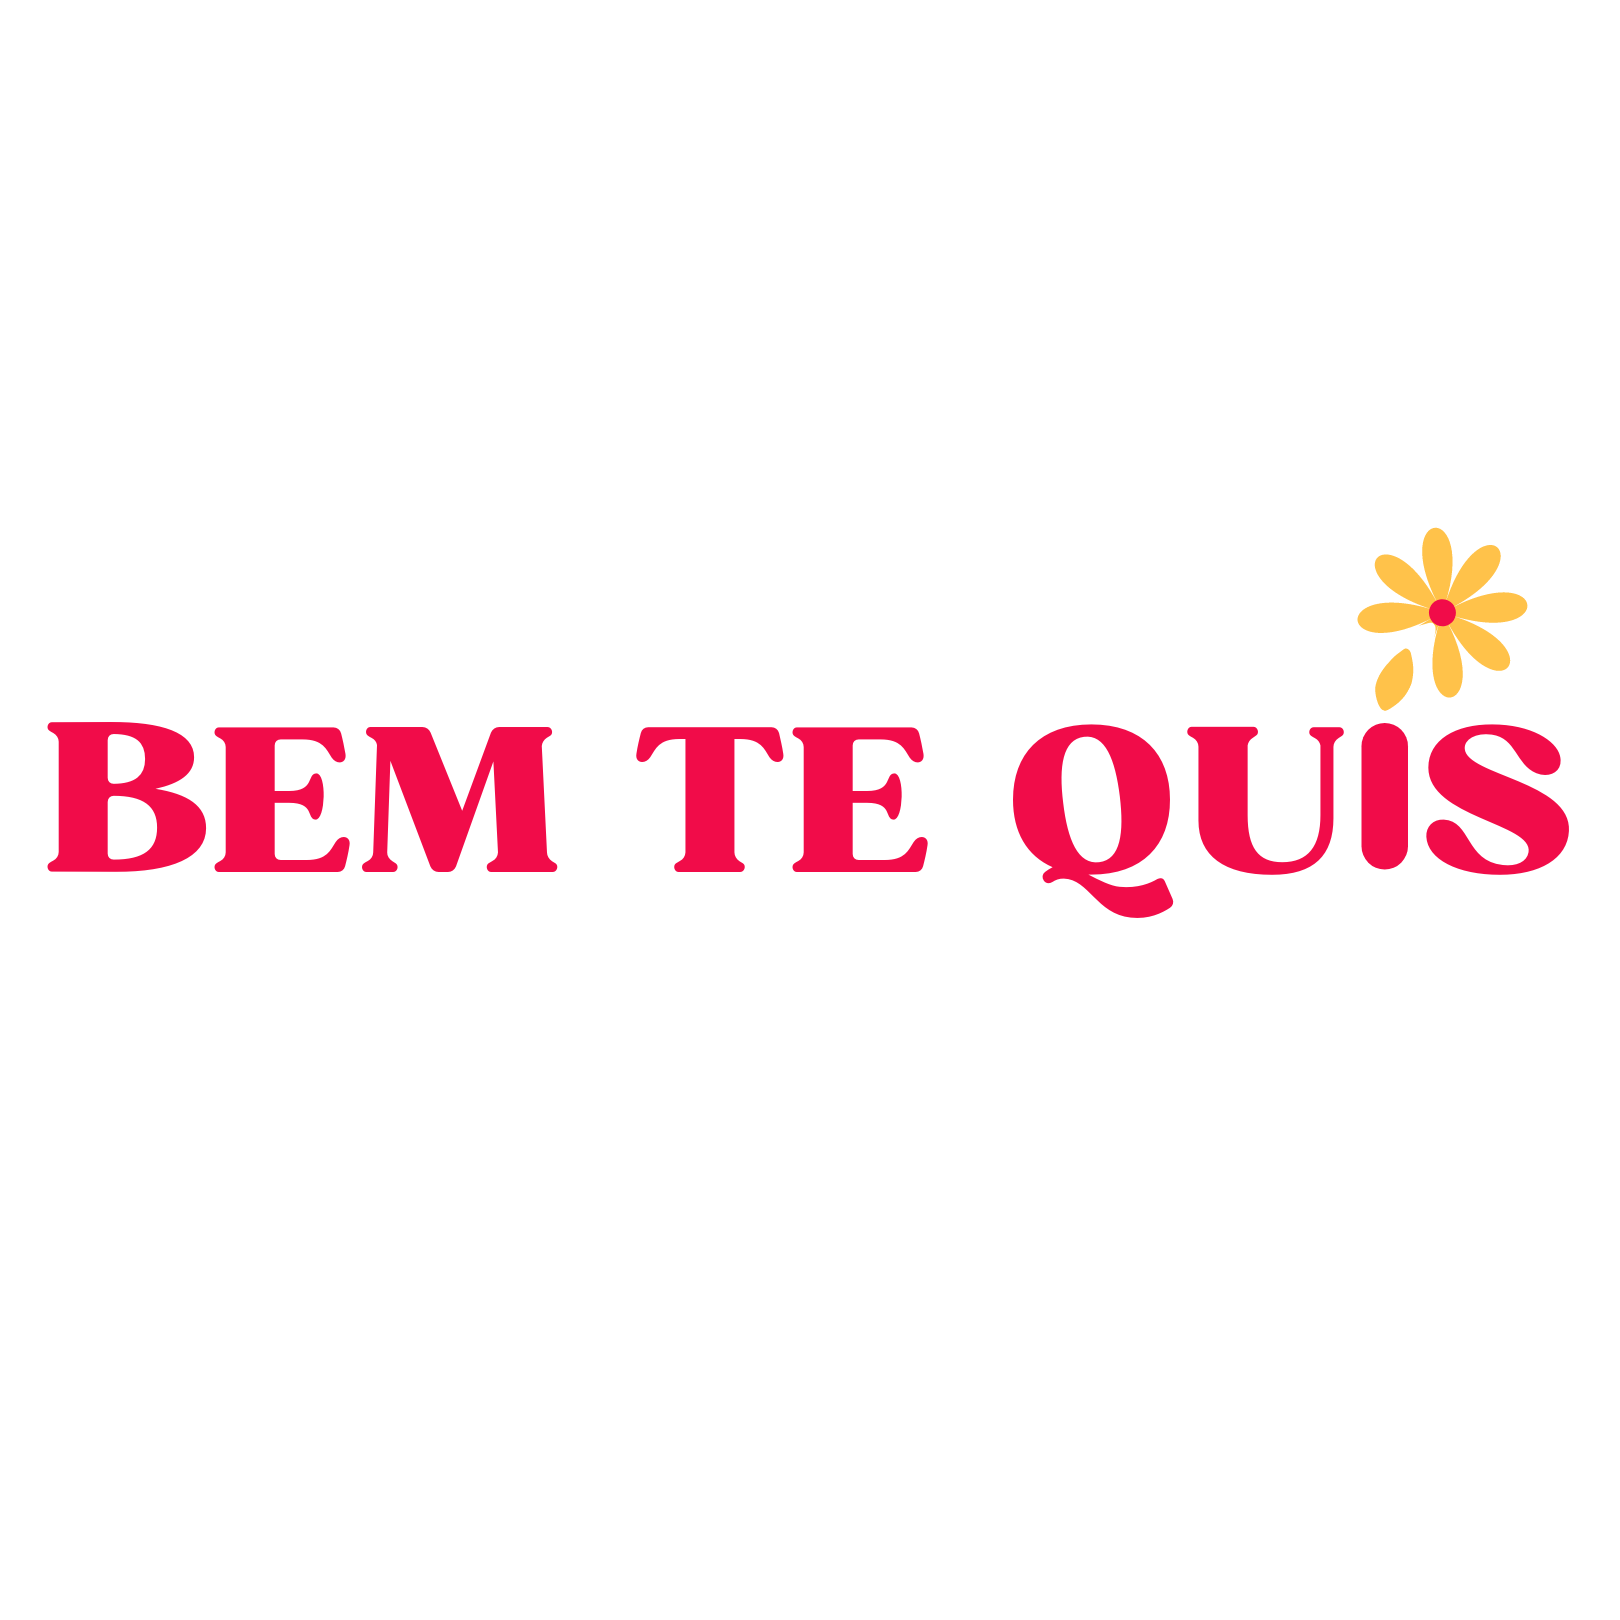 bemtequis.com.br